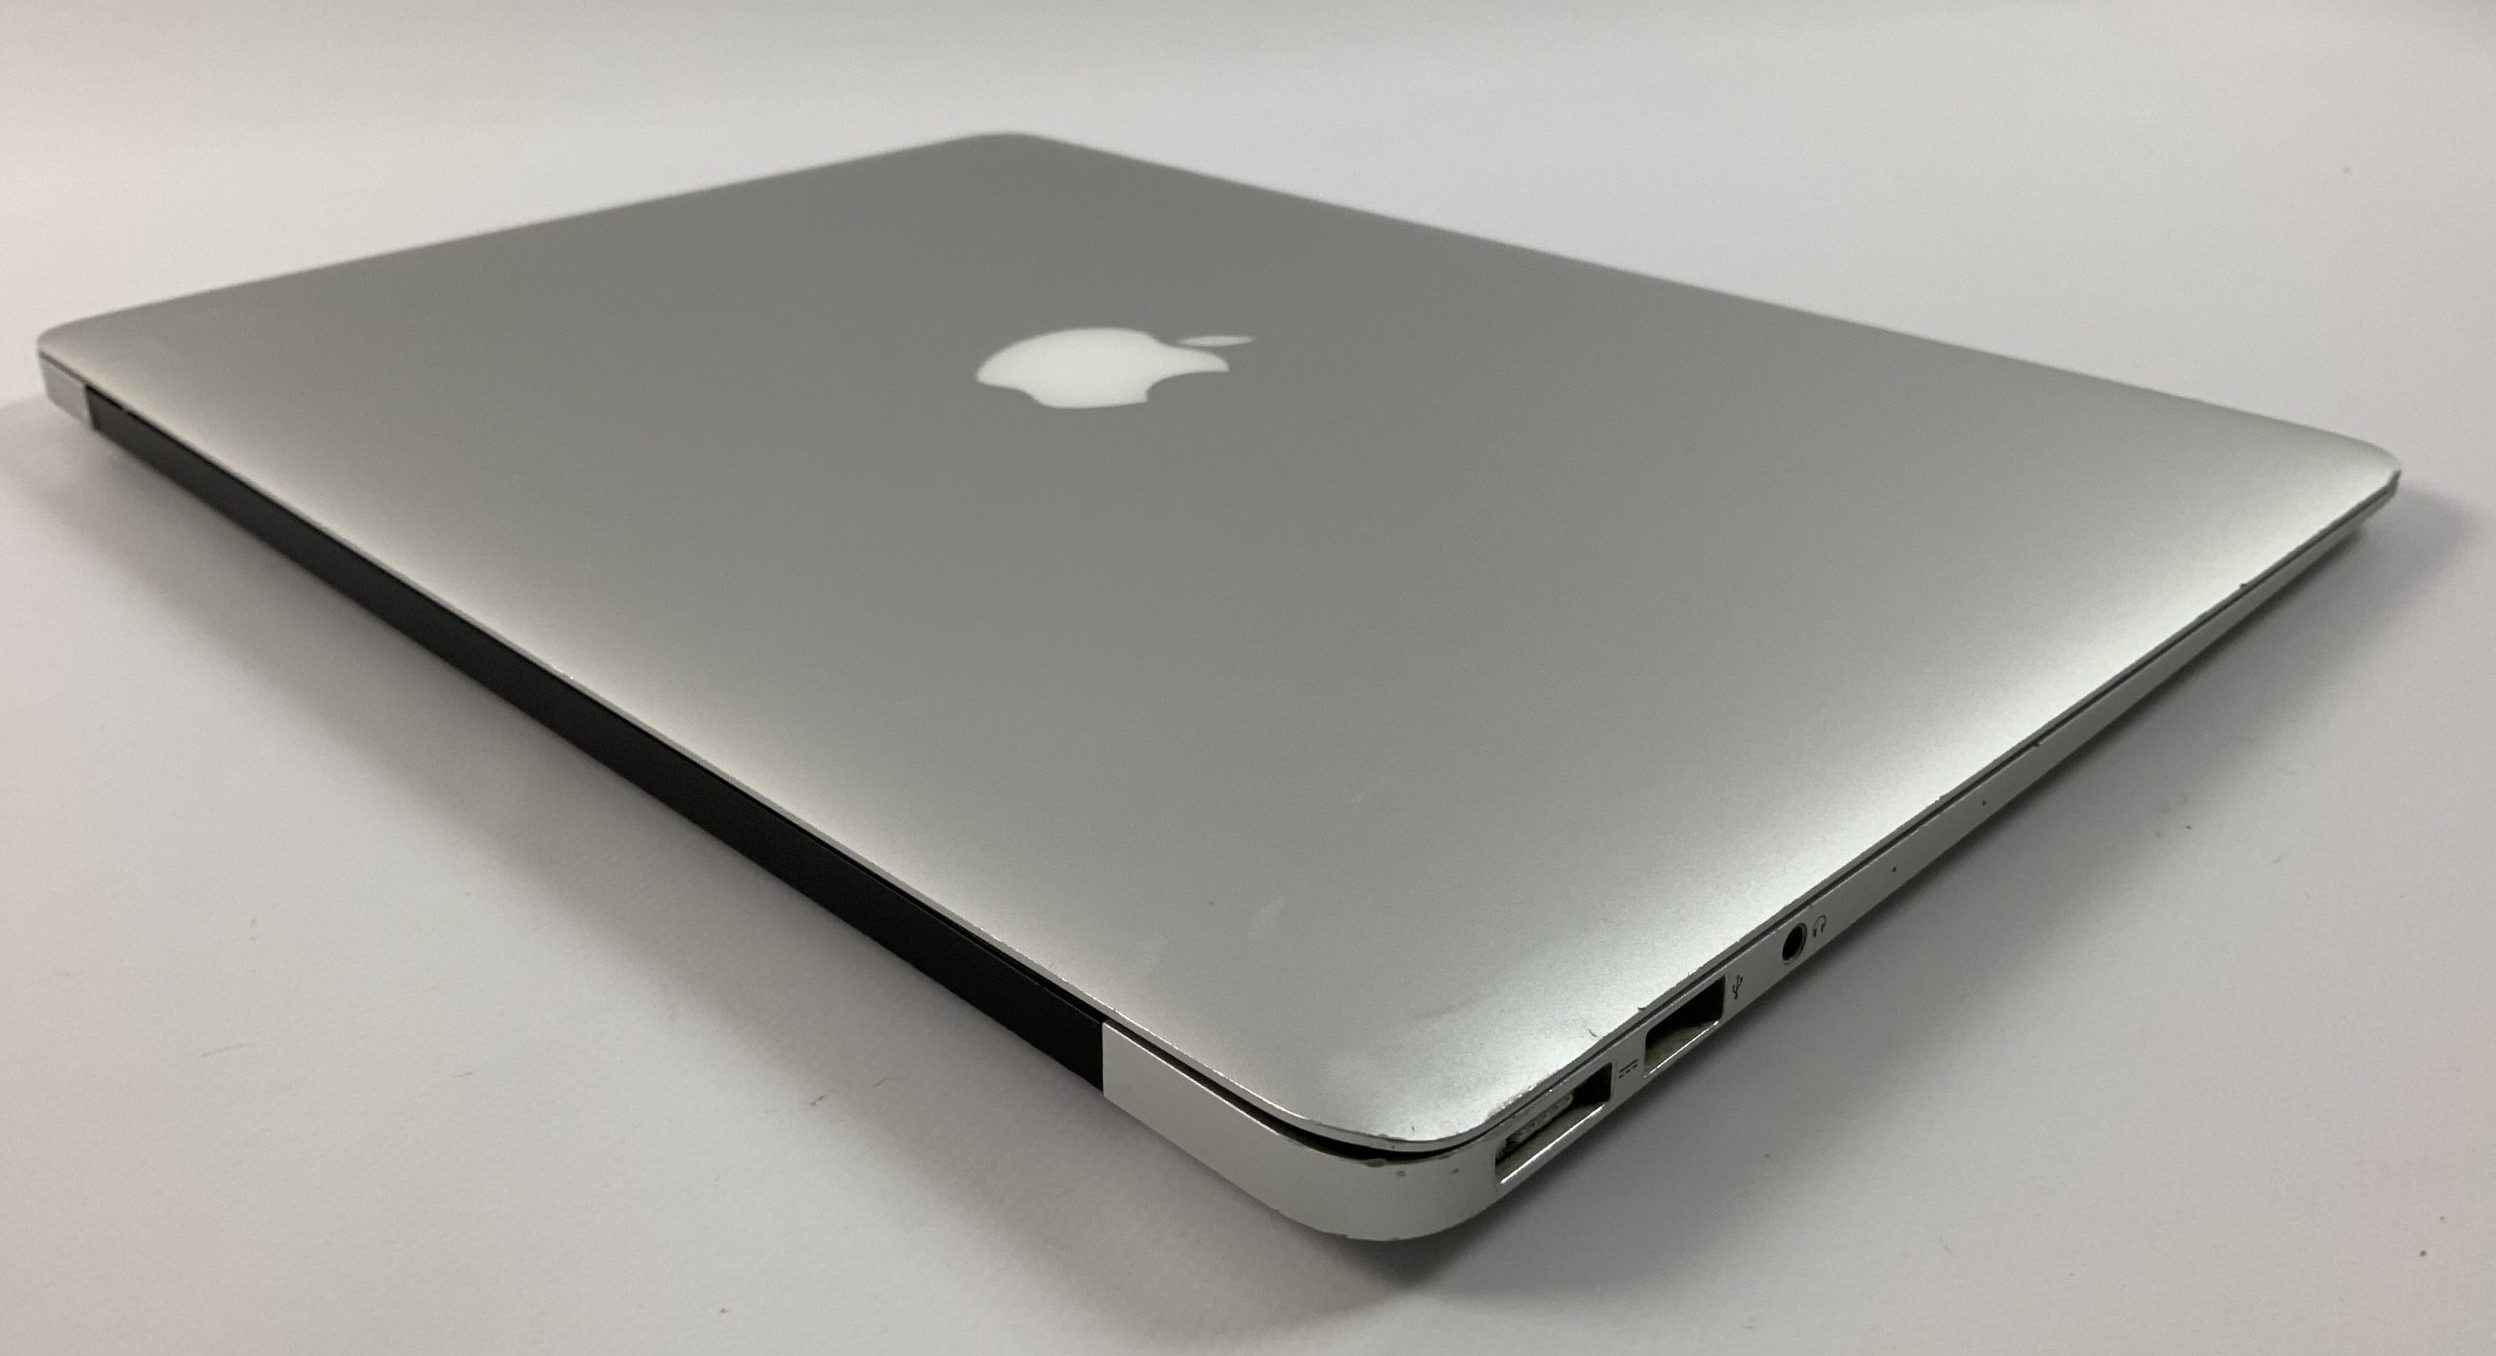 MacBook Air 13" Mid 2017 (Intel Core i5 1.8 GHz 8 GB RAM 256 GB SSD), Intel Core i5 1.8 GHz, 8 GB RAM, 256 GB SSD, Bild 4